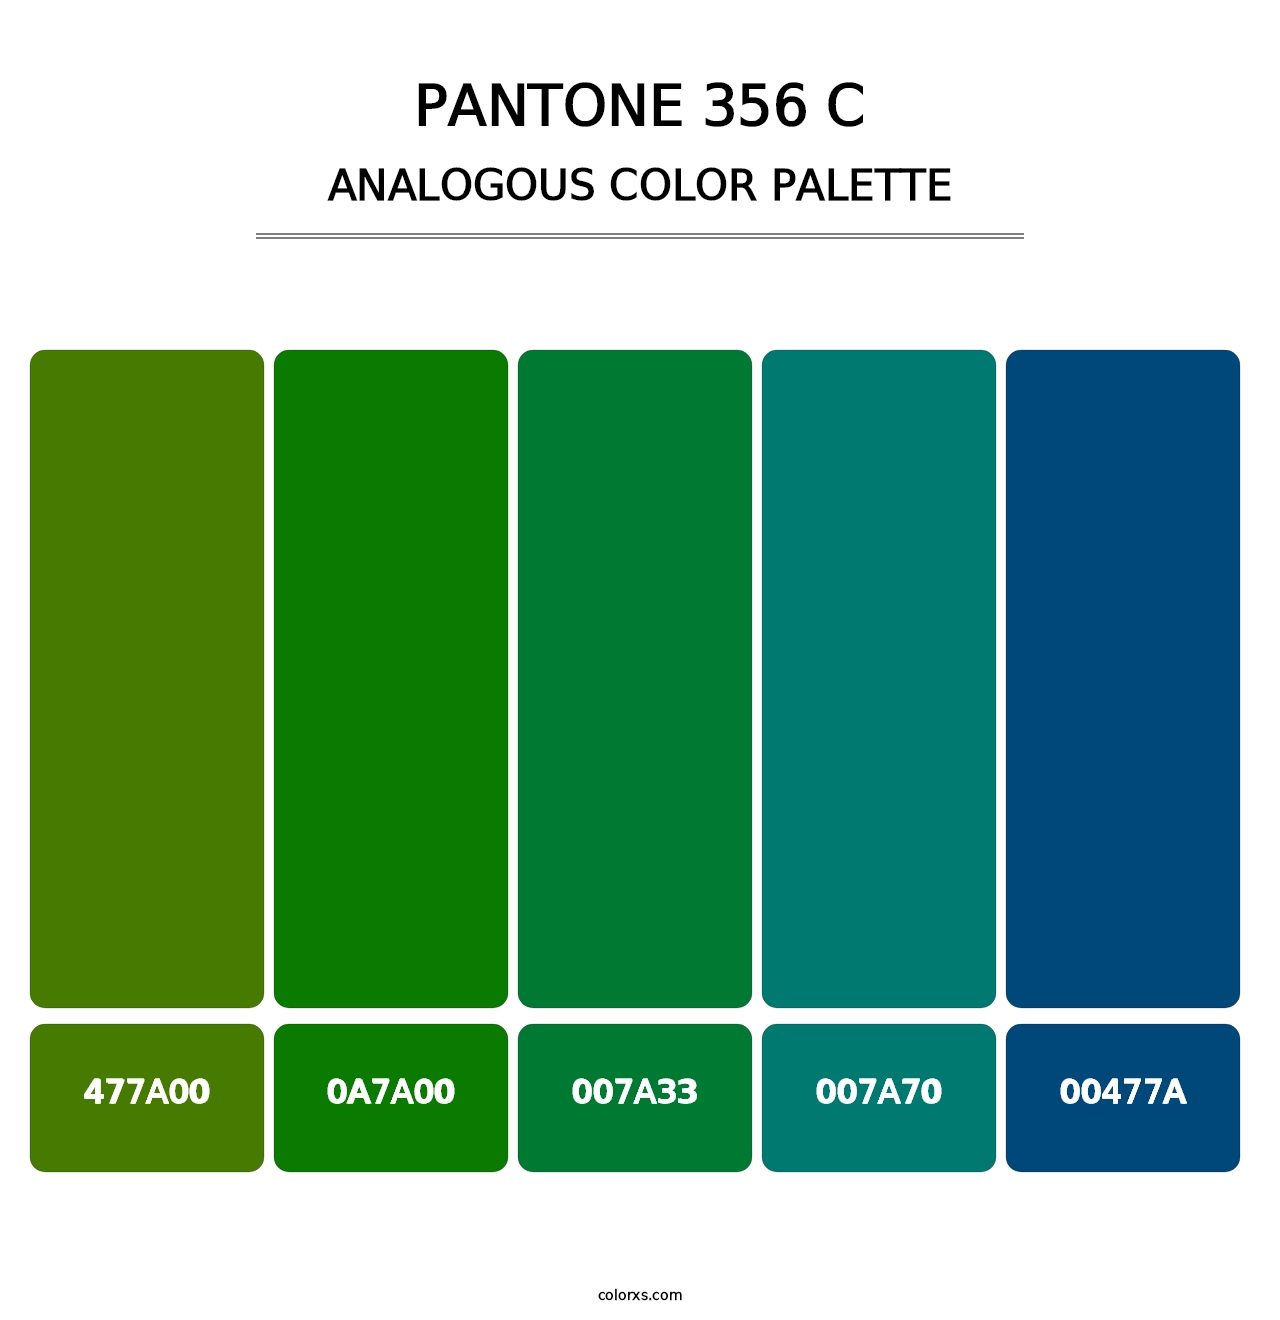 PANTONE 356 C - Analogous Color Palette